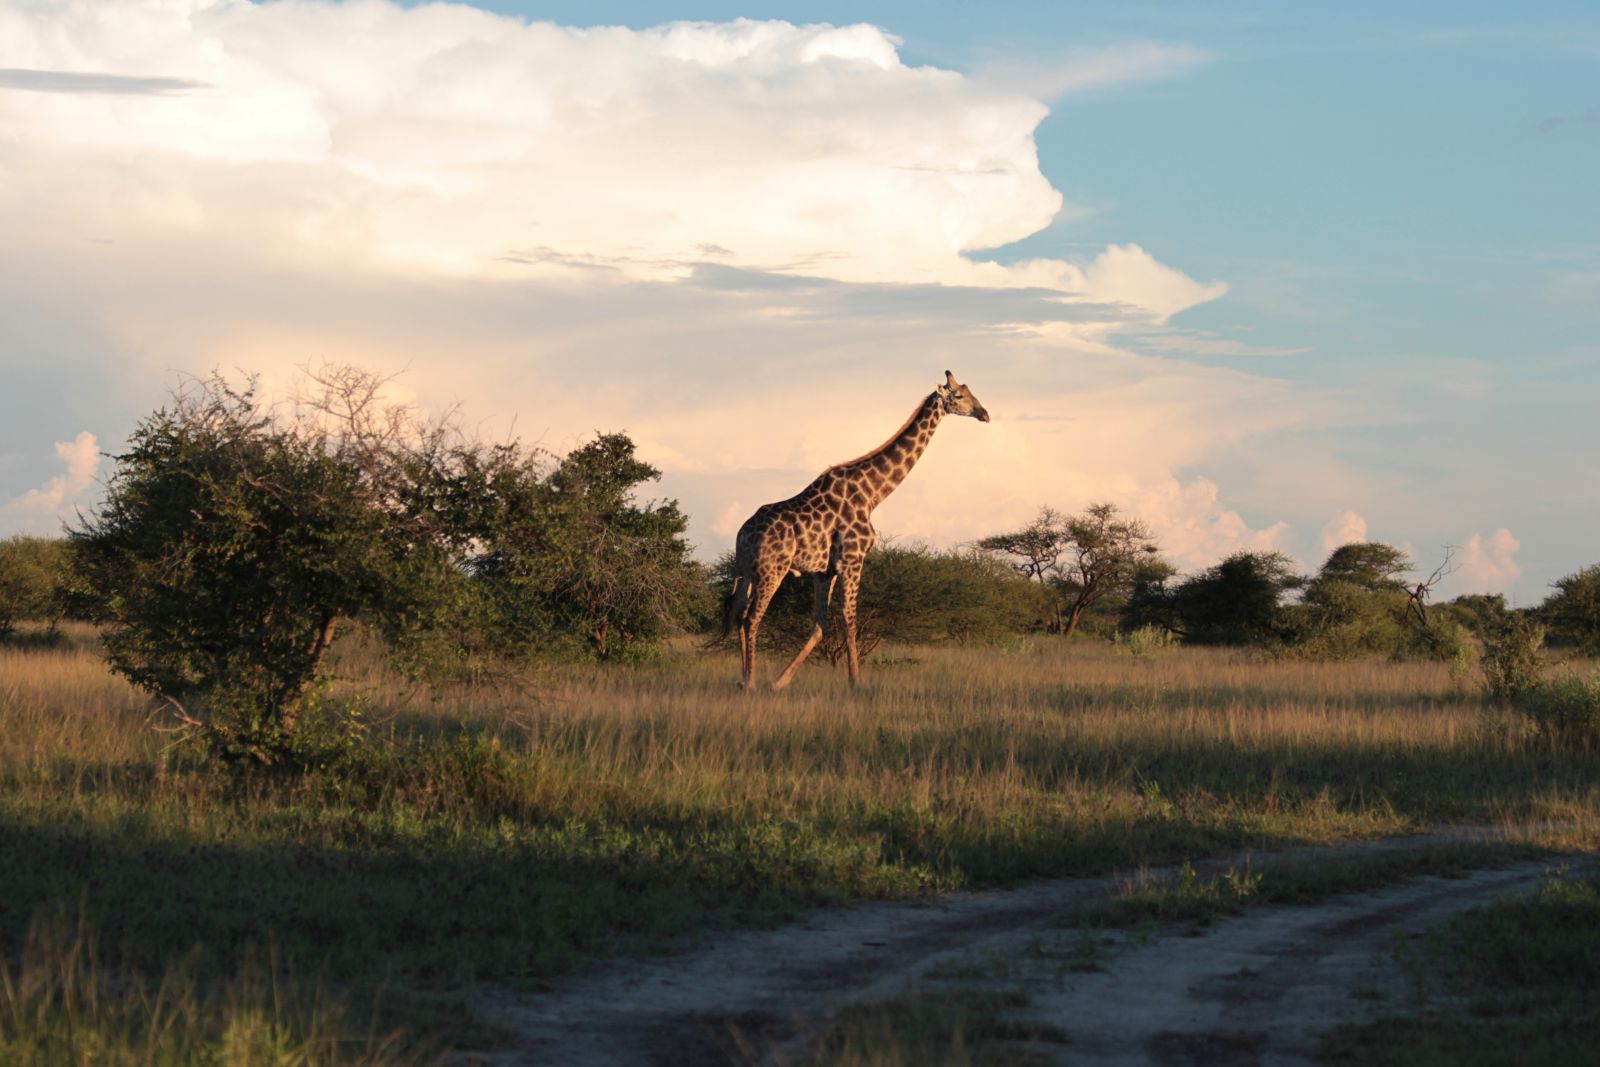 Giraffe, Nxai Pans National Park